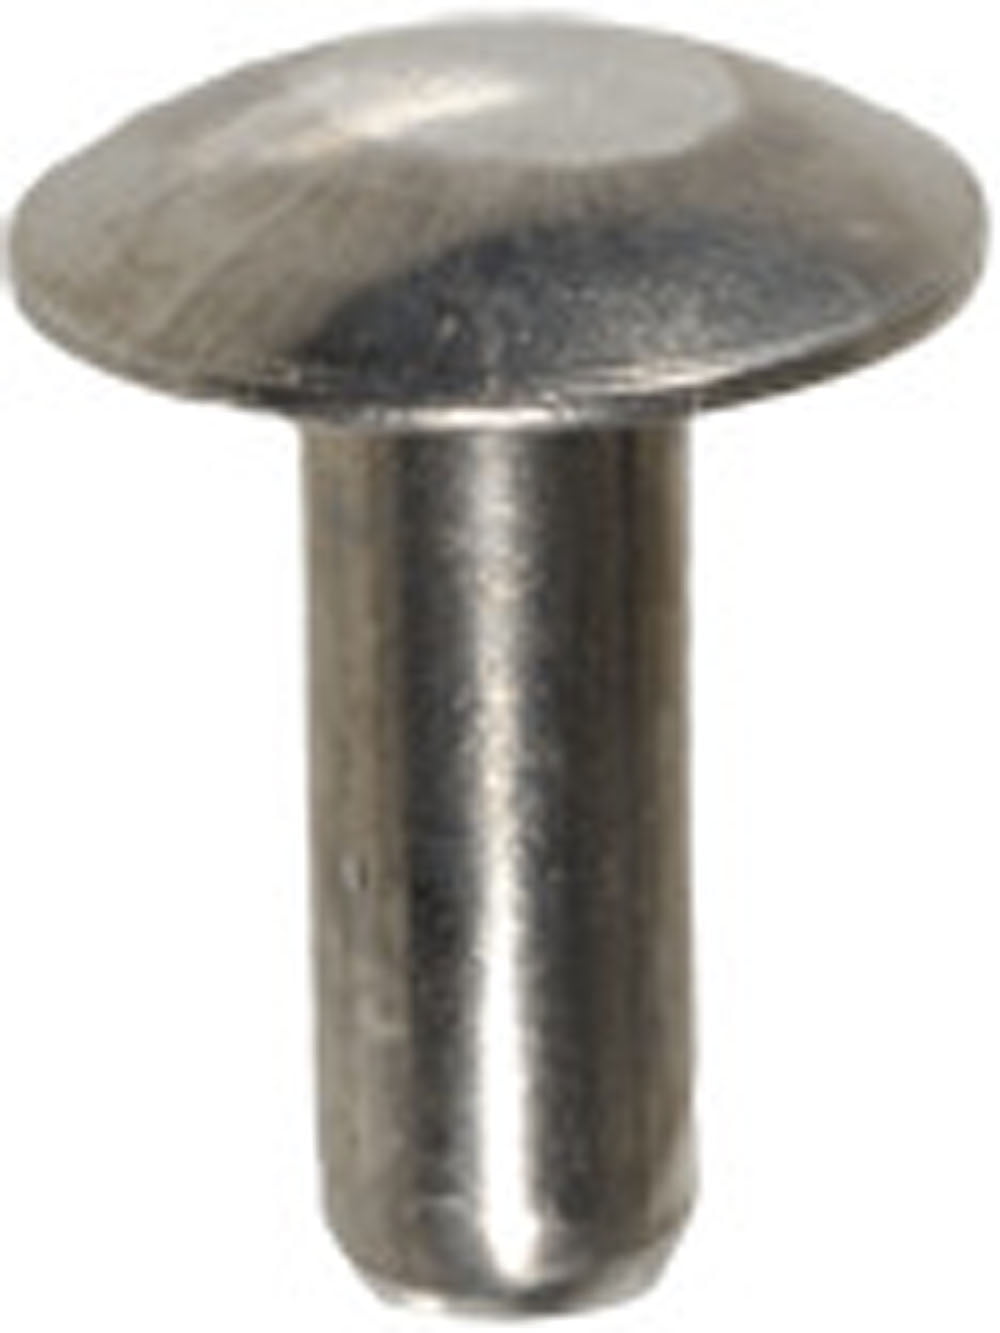 Steel Rivet Solid 3/16" Dia X 1/2" Long. Cup Head 40 No 